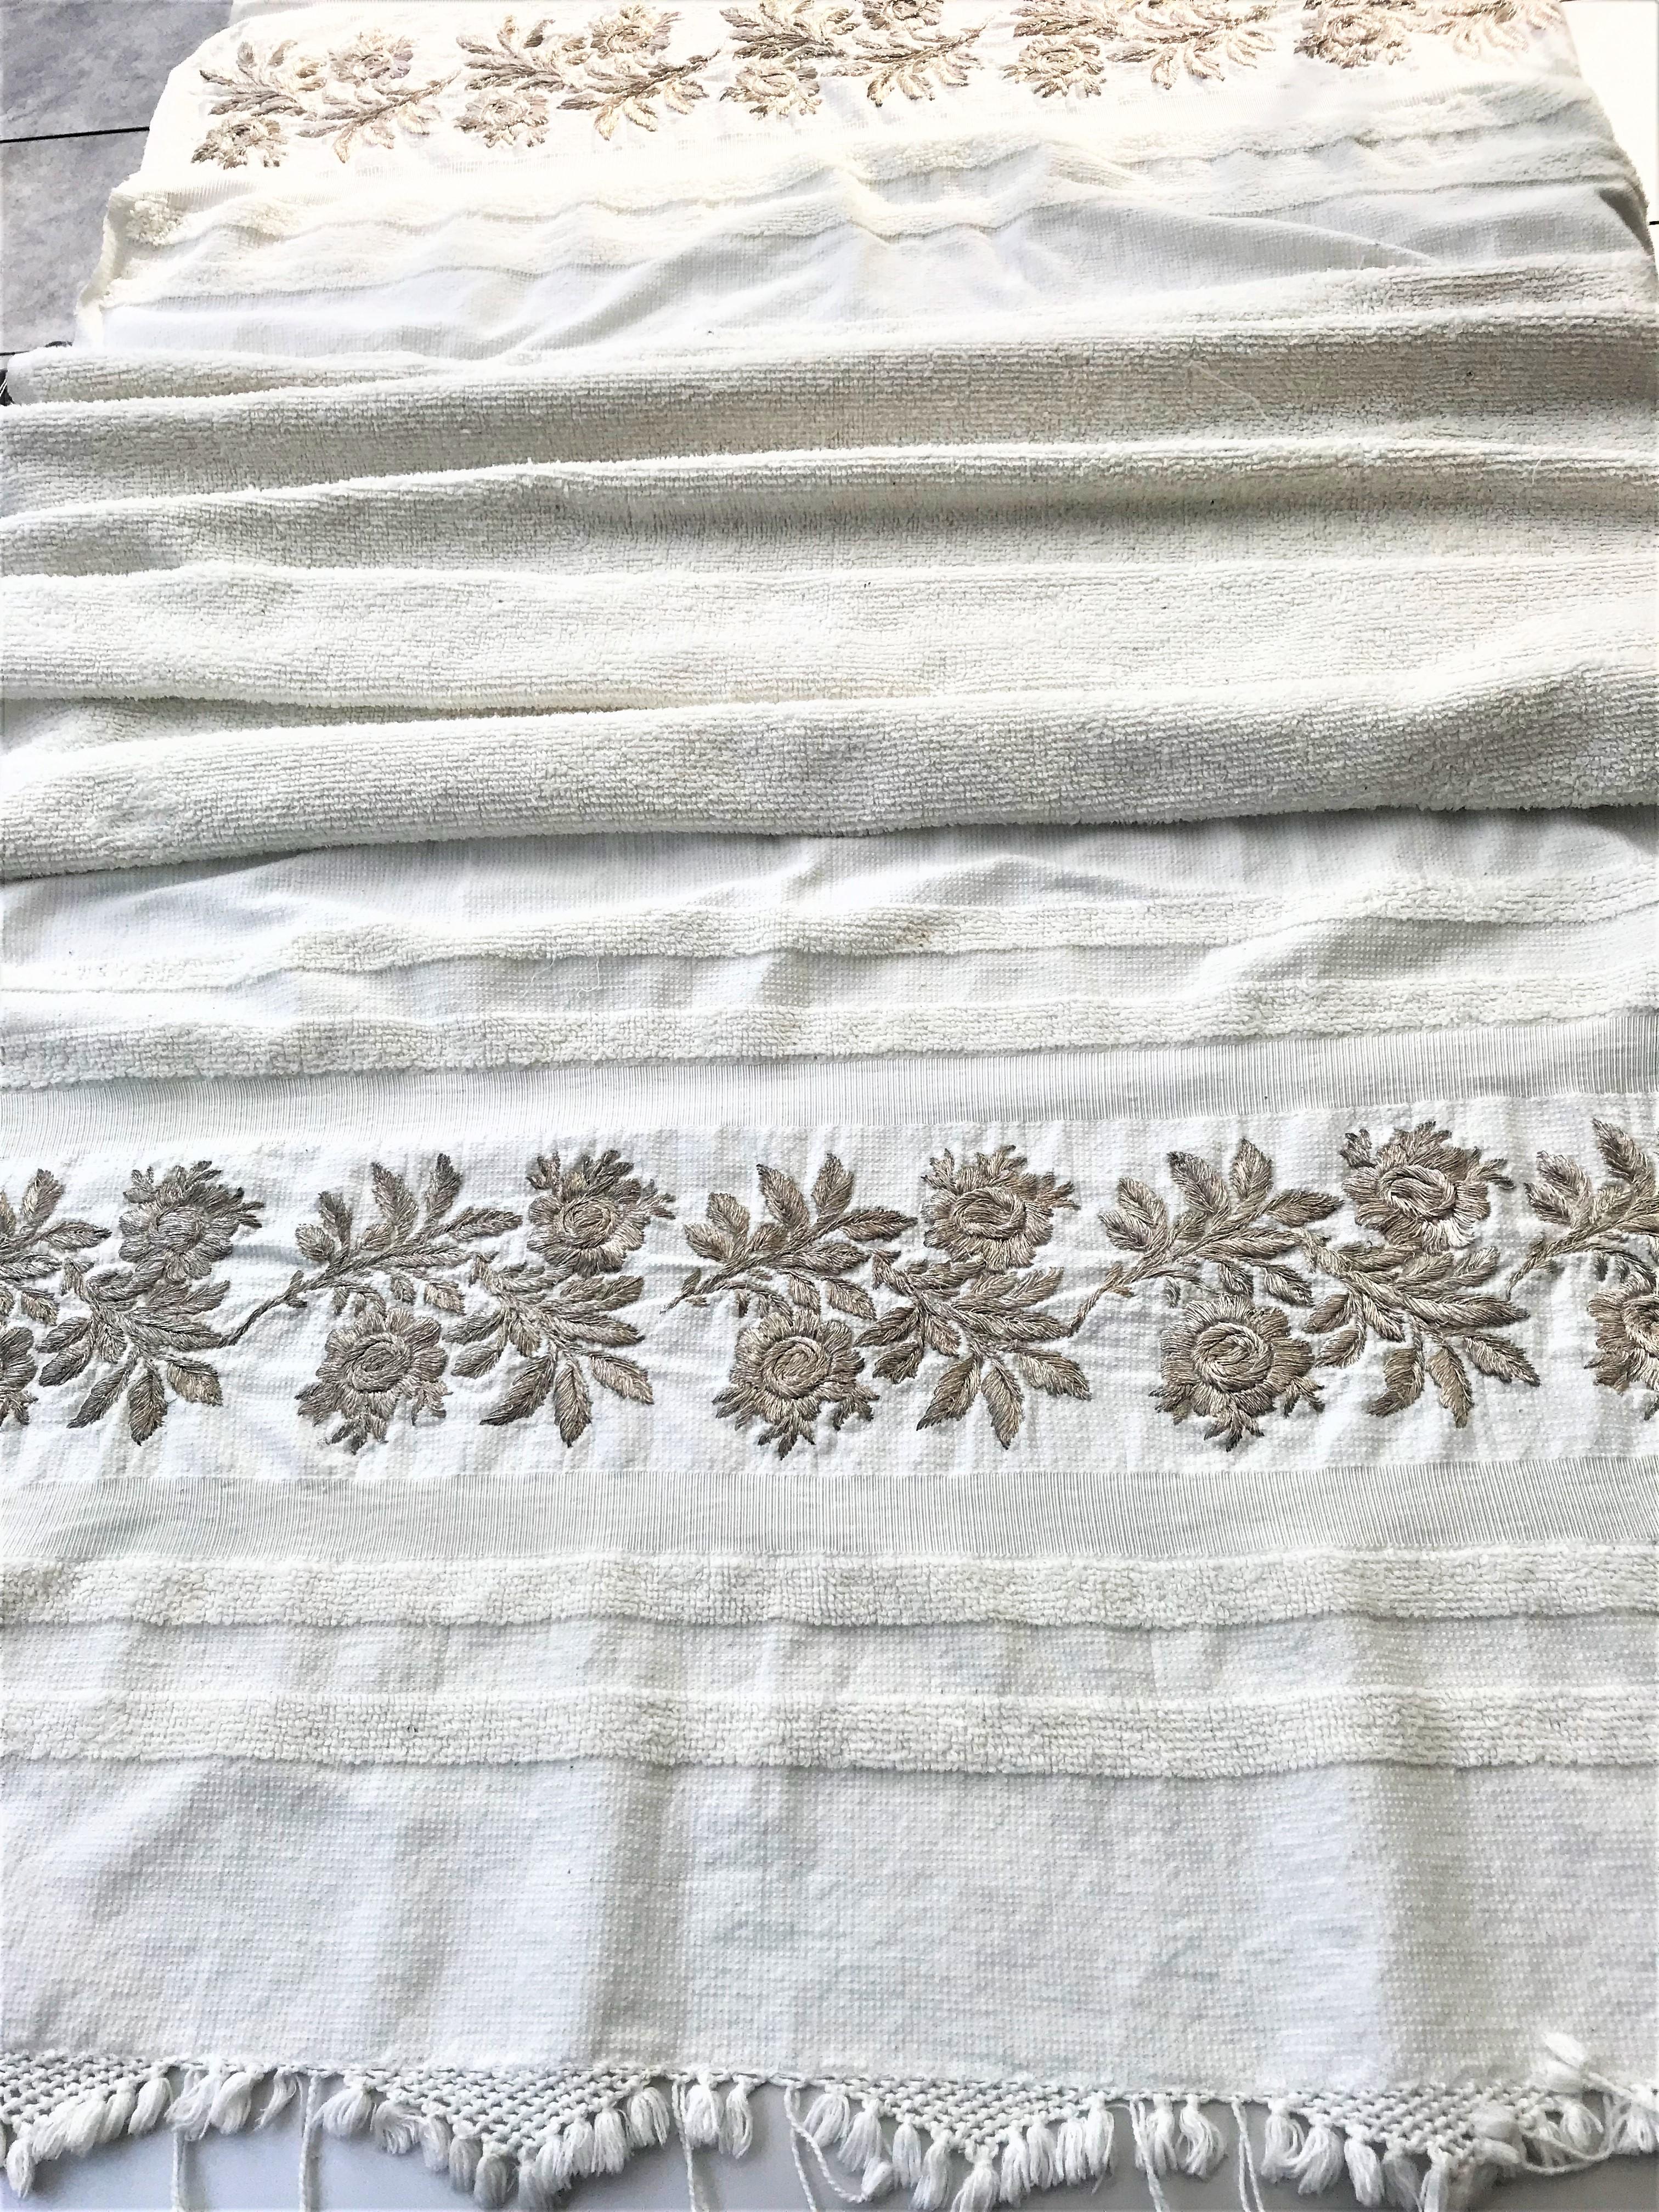 Magnifique serviette de hammam ancienne, grande et petite, de couleur blanc cassé, avec de grandes fleurs et des feuilles brodées d'un fil d'argent. Vous pouvez l'utiliser comme une serviette de plage - serviette de bain couverture de pique-nique,